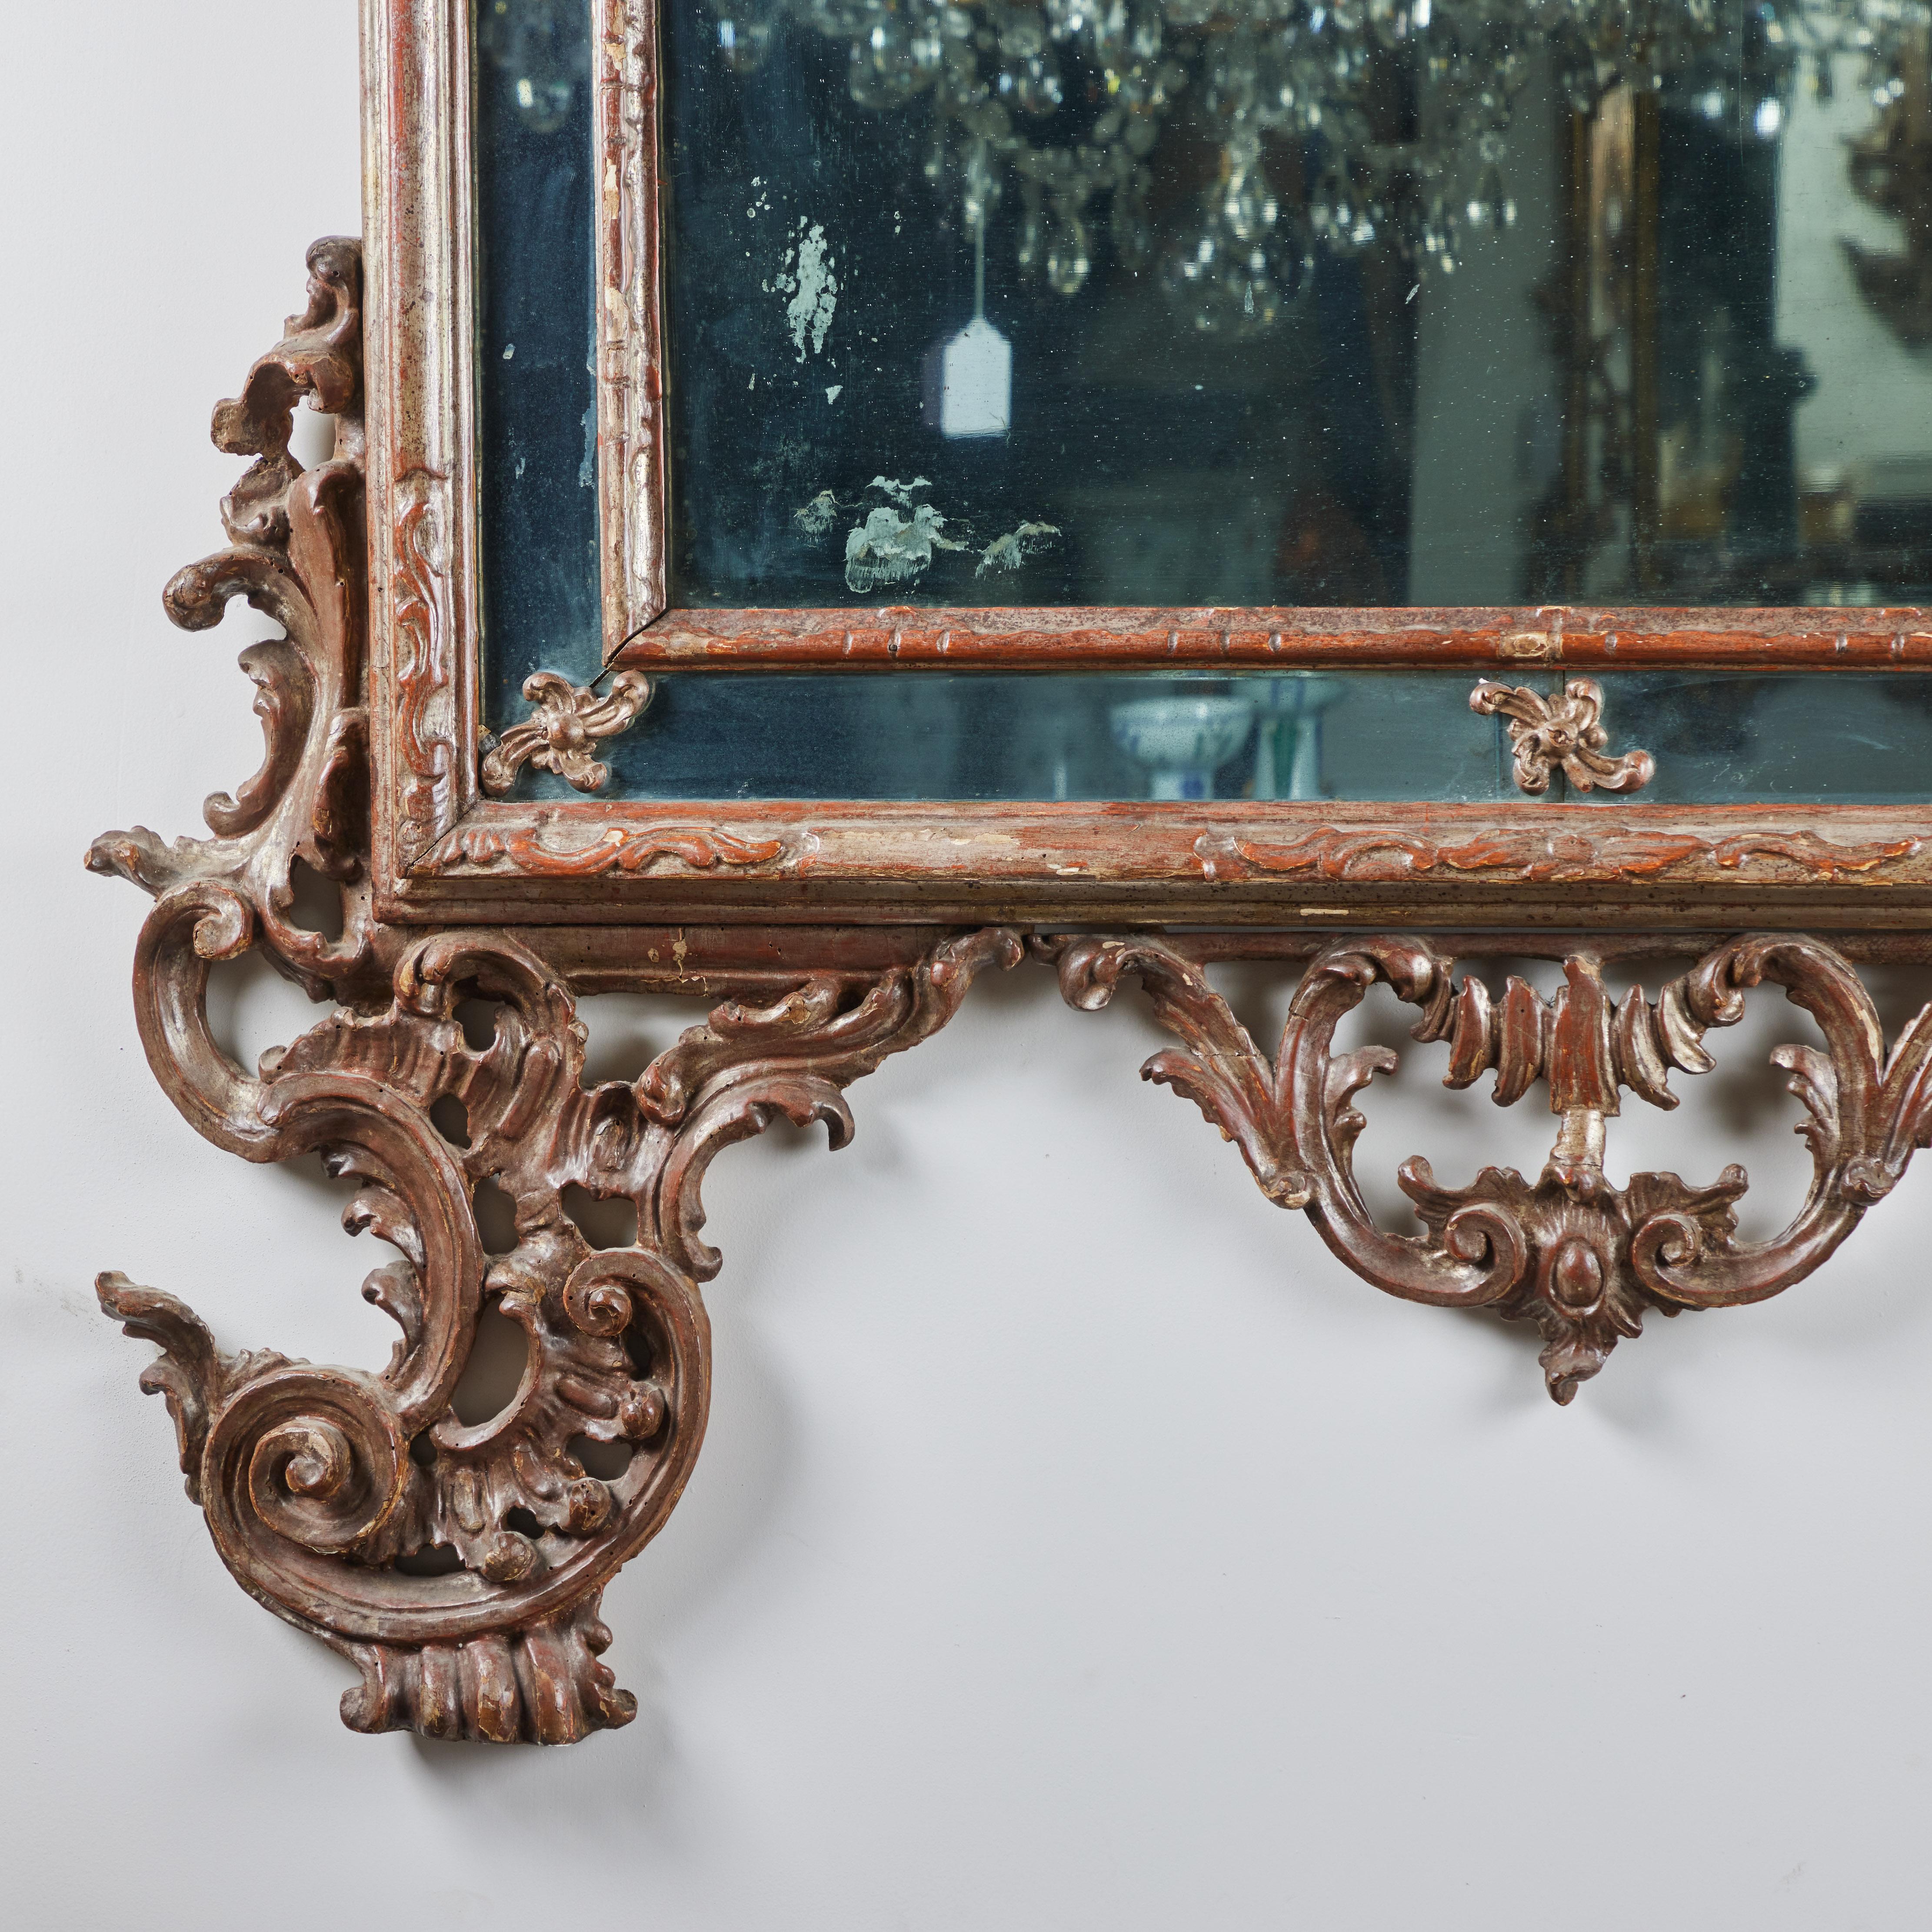 Schöner Venezianer,  handgeschnitzter, gessoierter und silbervergoldeter Spiegel mit Rahmen.   Der Giebel ist nach oben hin gebogen.  Das originale Spiegelglas ist altersentsprechend marmoriert.  
